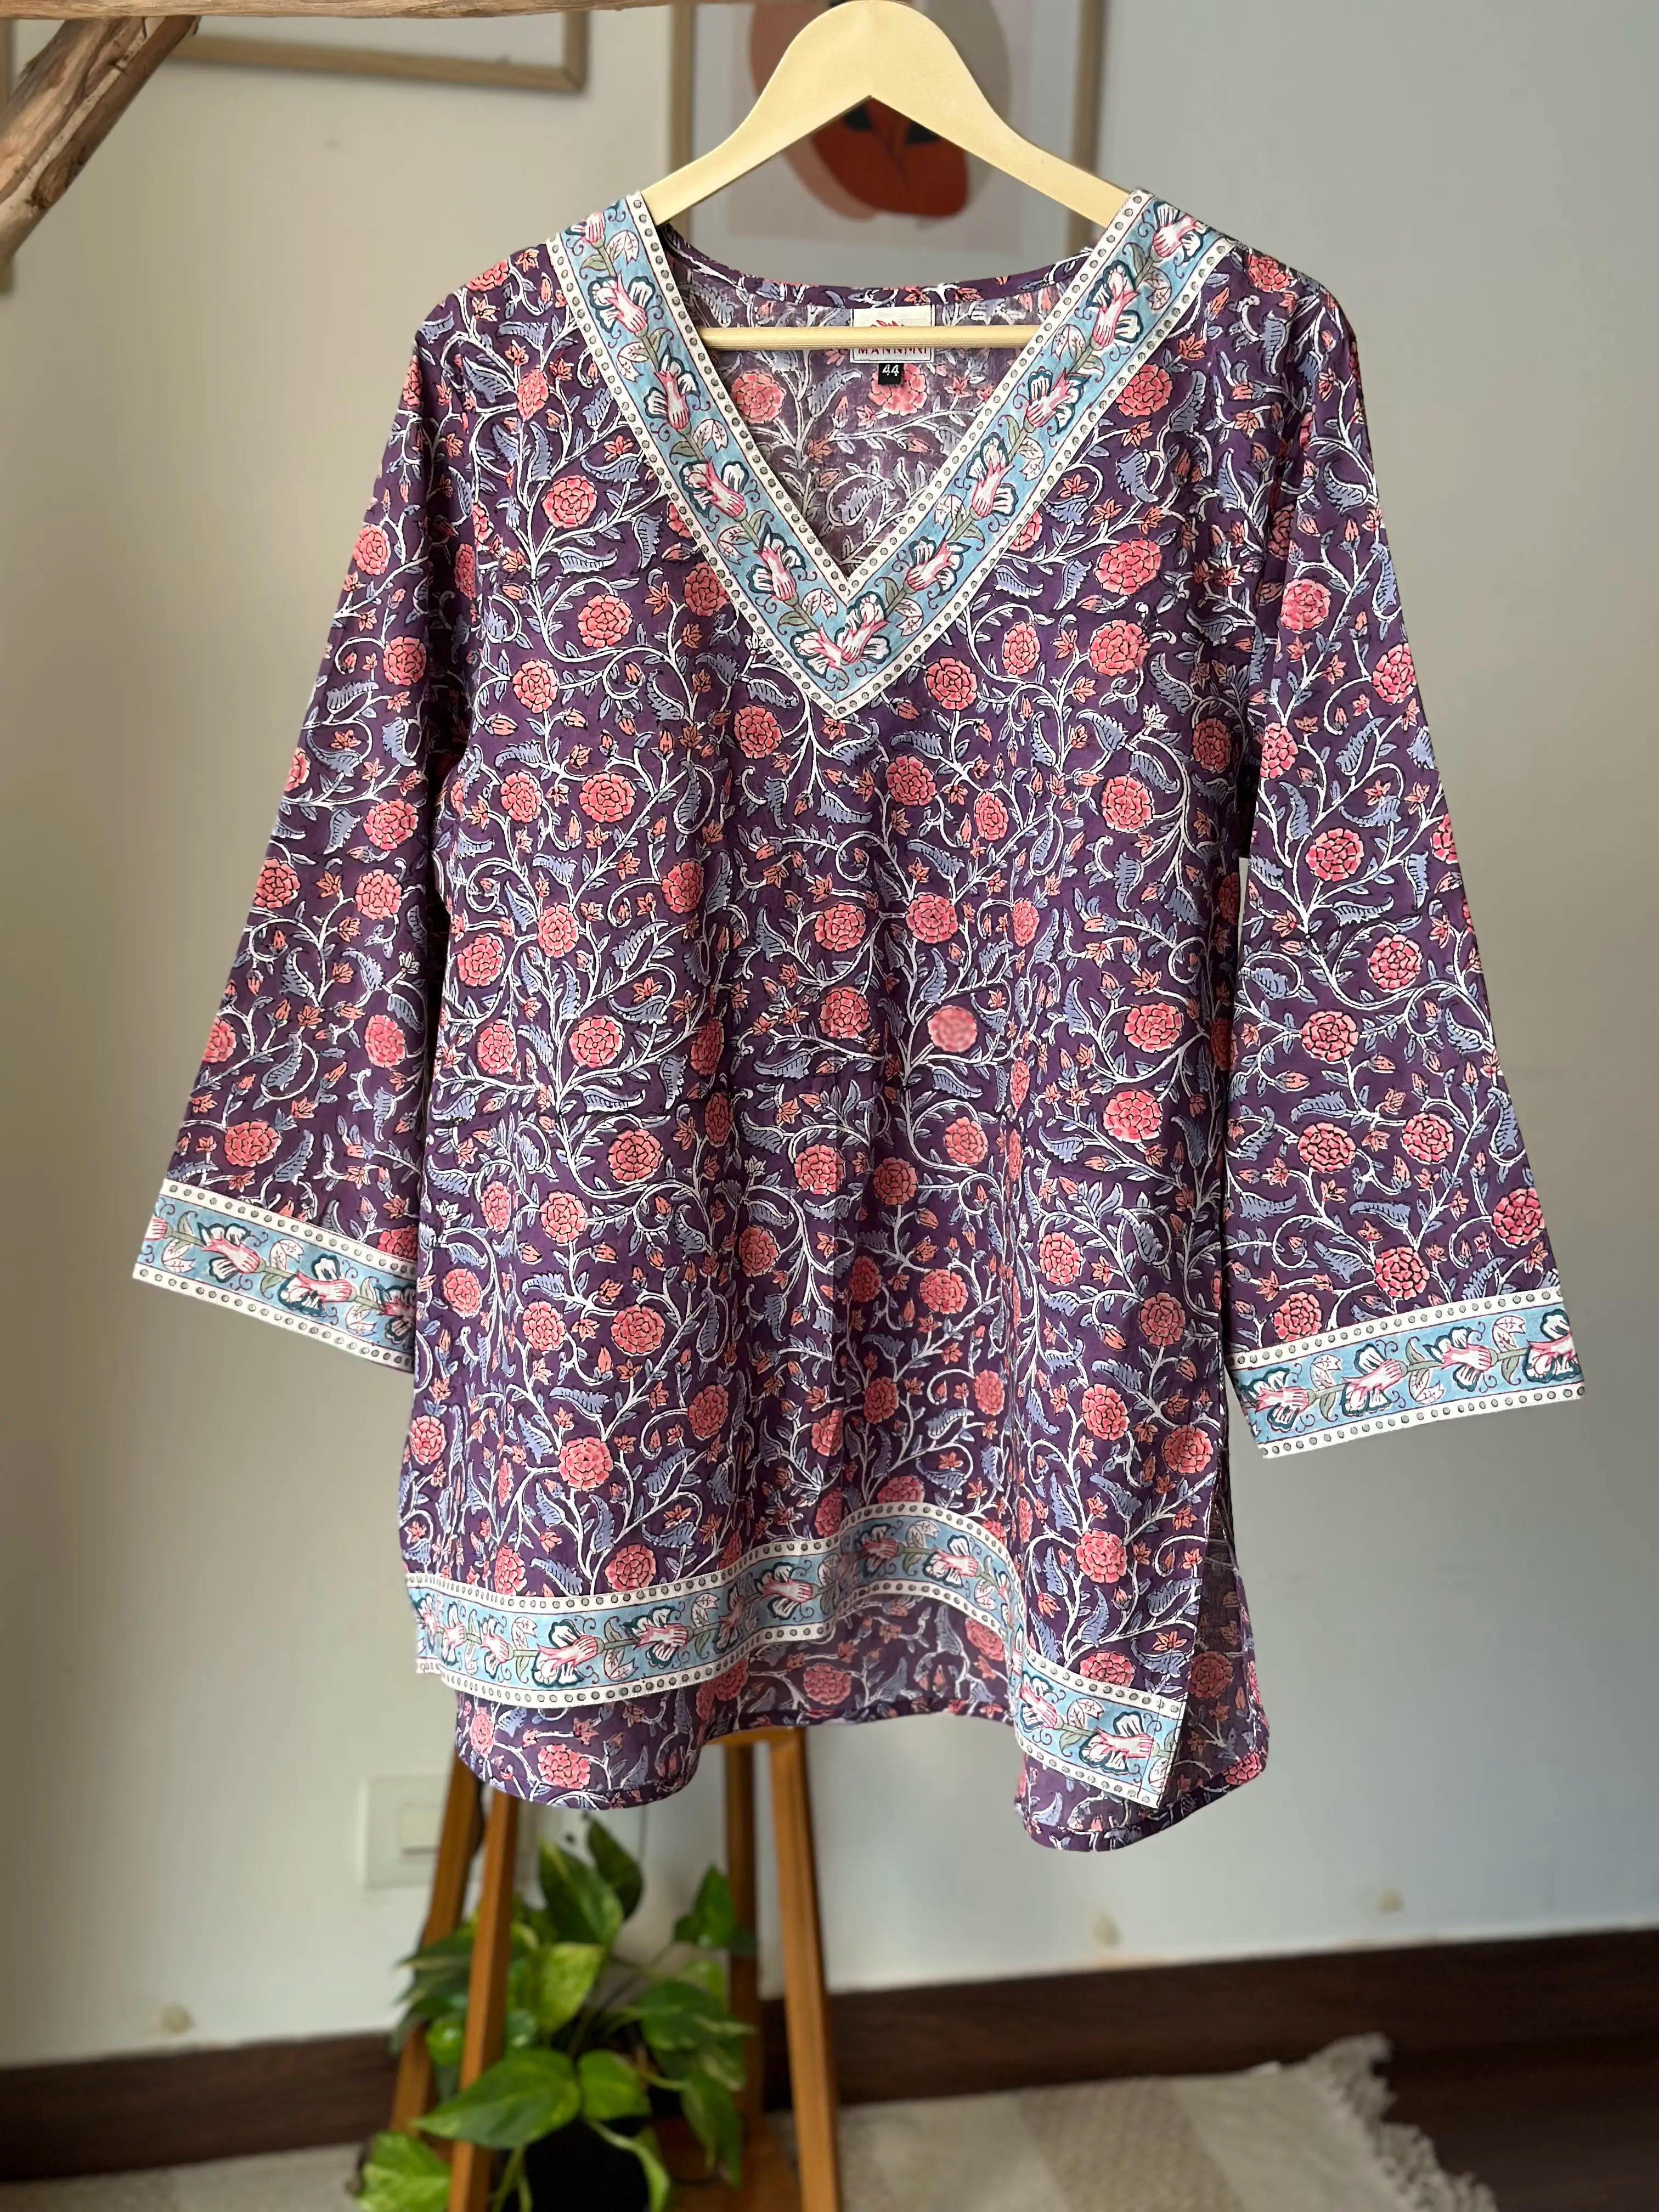 Soft cotton blouse | Cotton tops designs, Velvet dress designs, Stylish  dress book